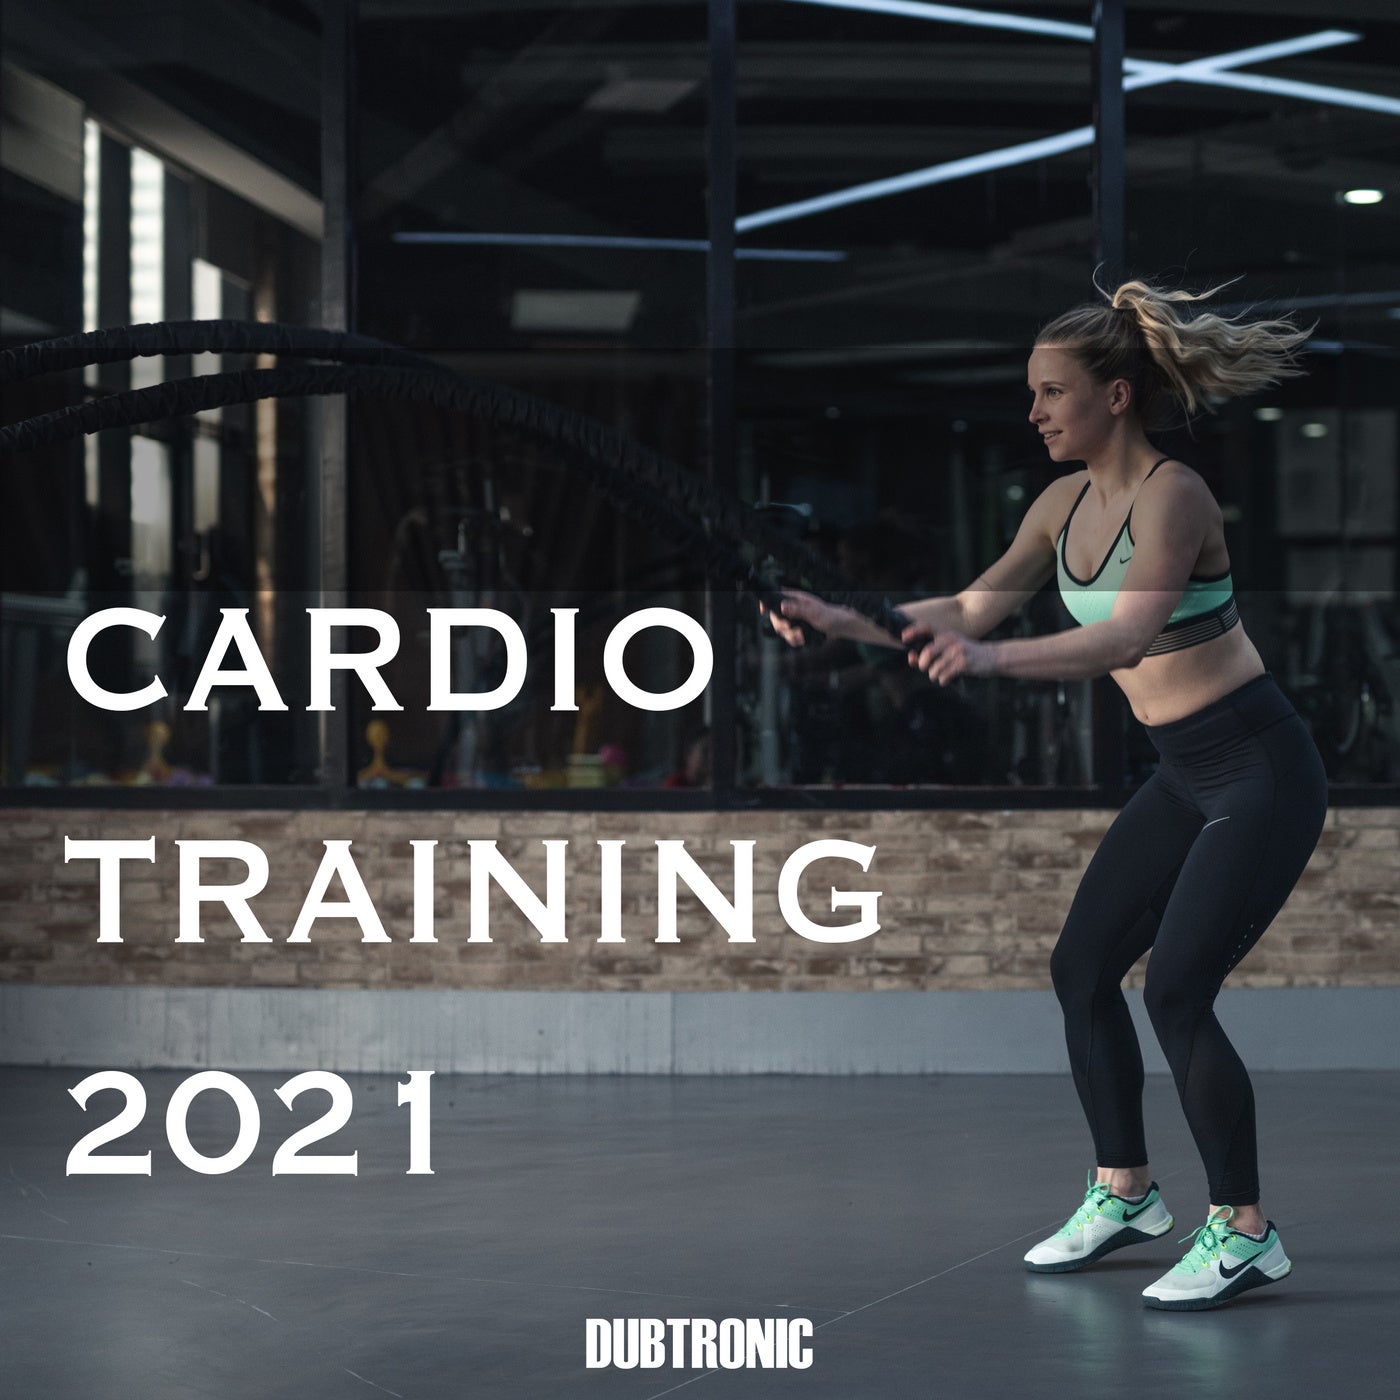 Cardio Training 2021